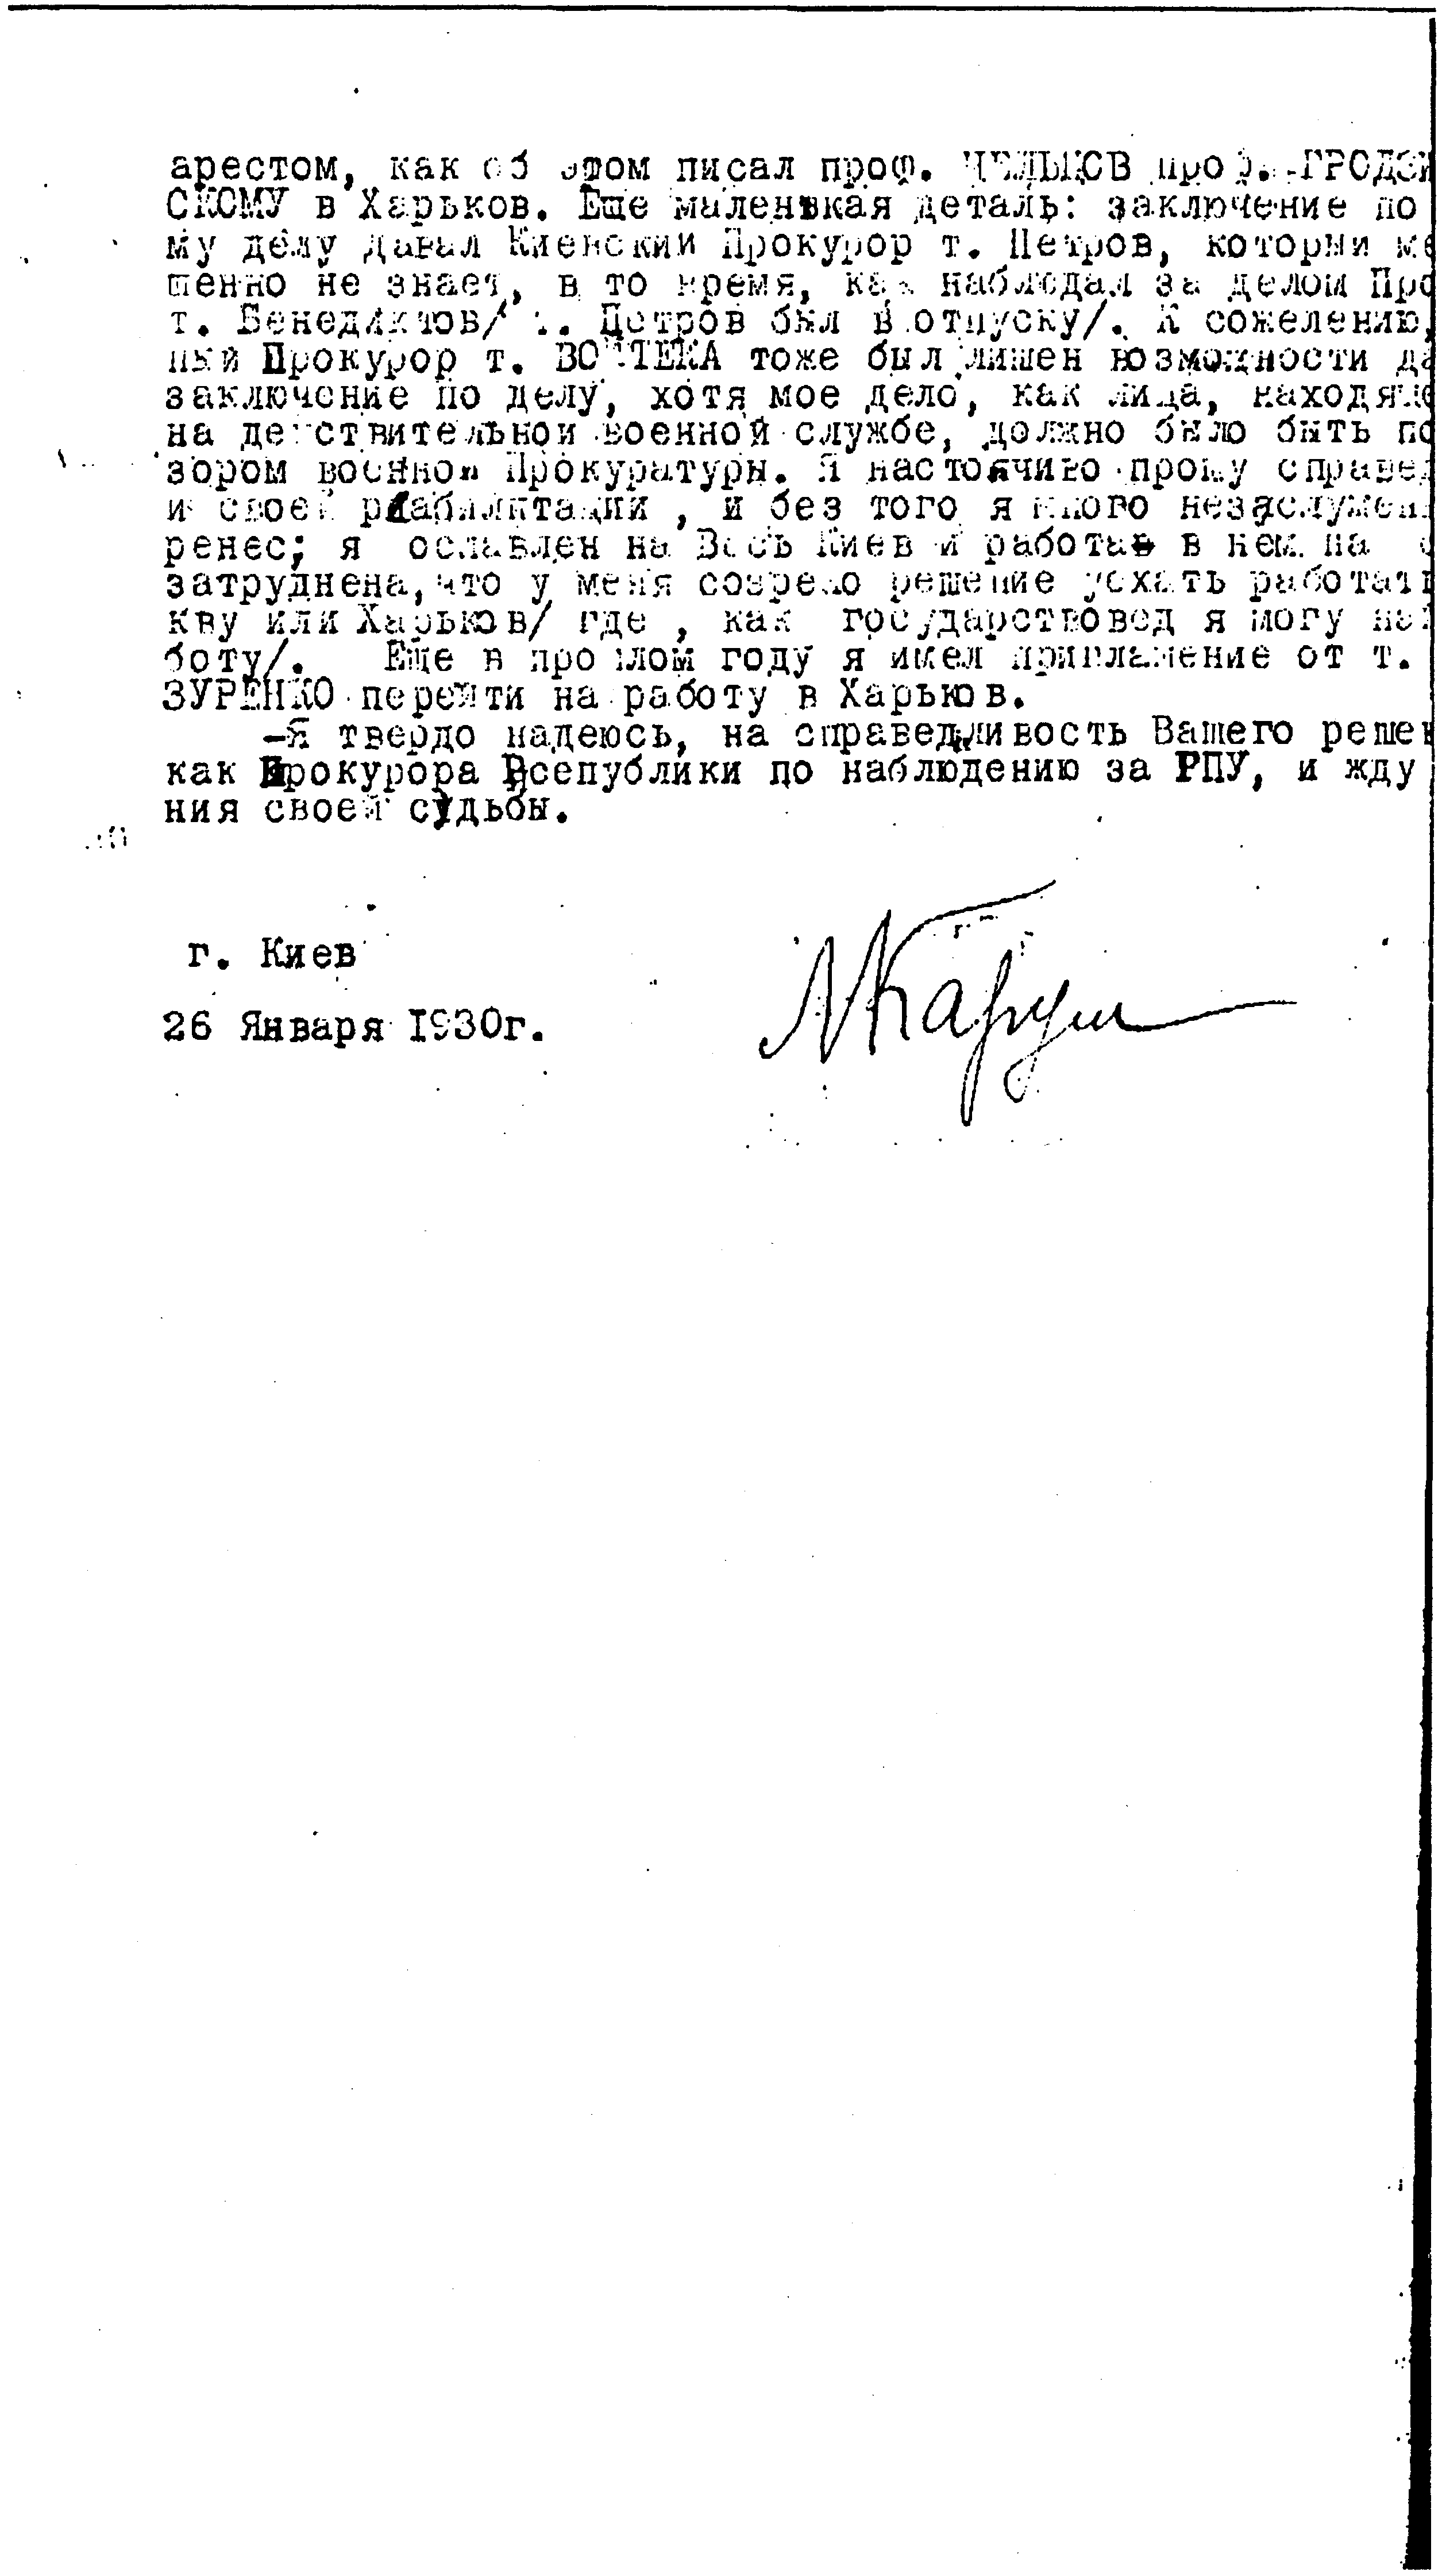 Документы к биографии Л.С. Карума. Заявление из личного дела 1930 года